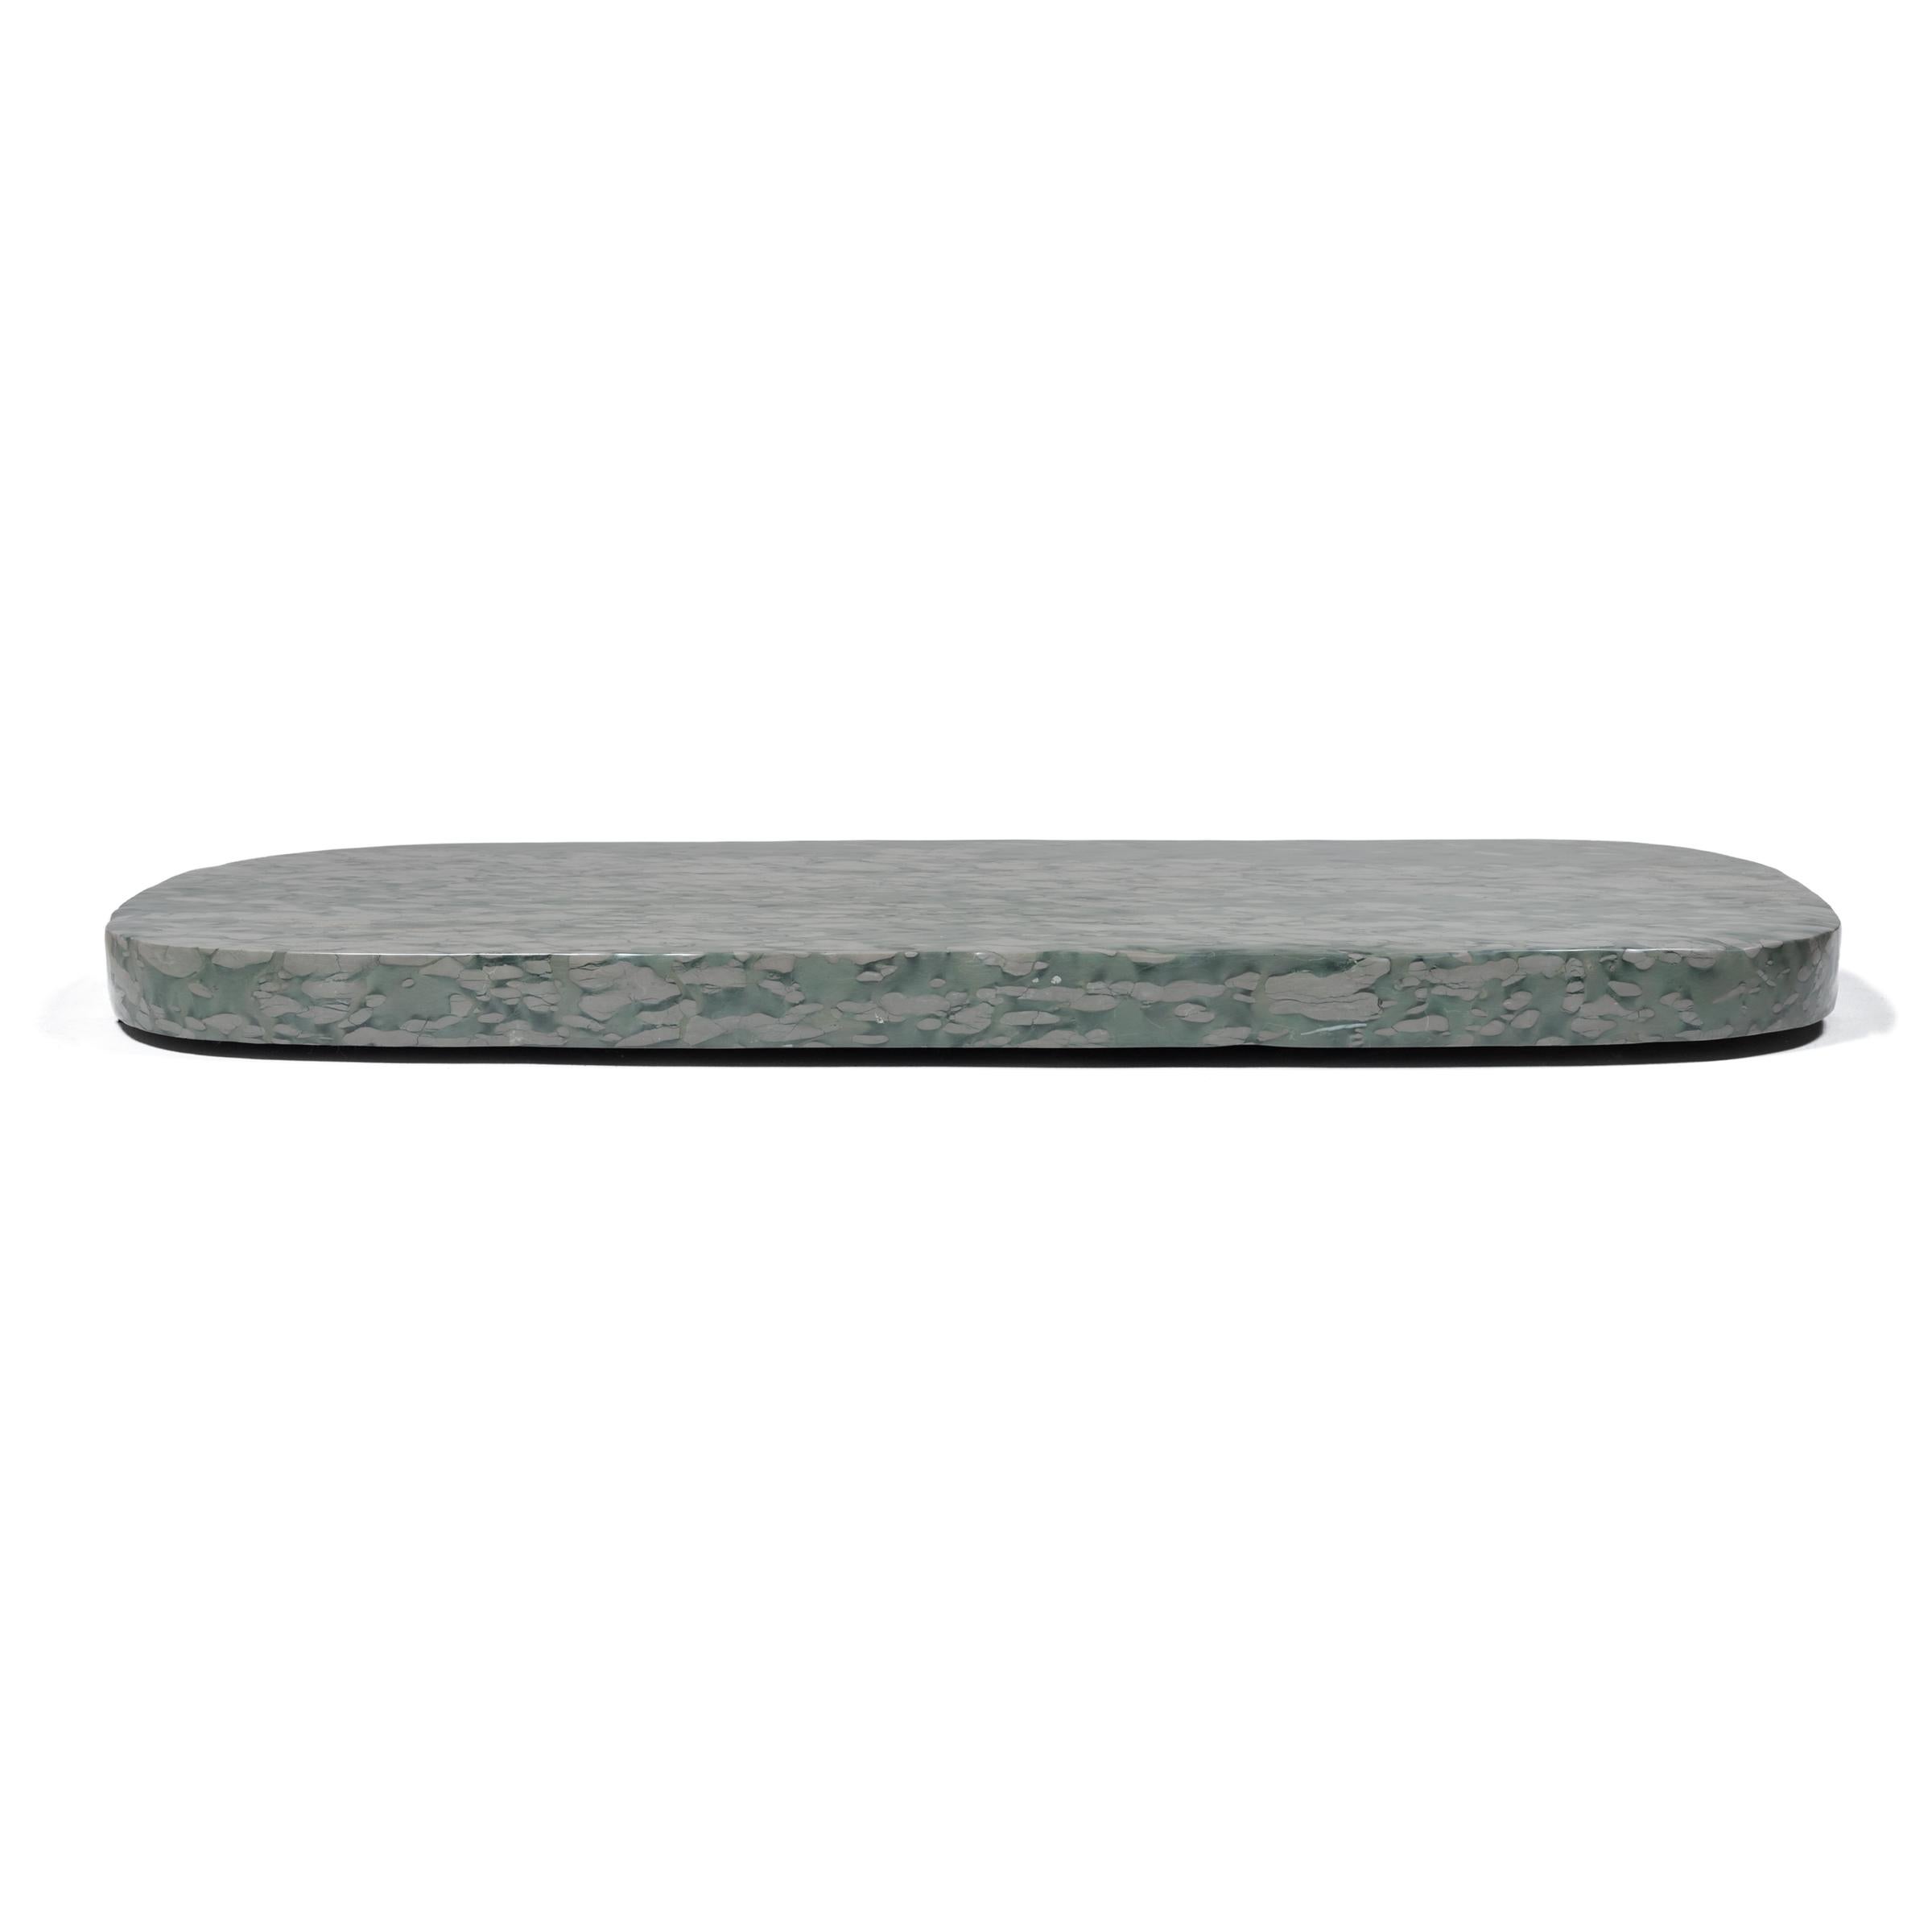 Cette dalle de pierre expansive est constituée de pierre zhenzhu, un conglomérat calcaire extrait du lac Tai dans la province de Jiangsu. Mouchetée de touches de couleur presque picturales, cette pierre recherchée était particulièrement prisée par